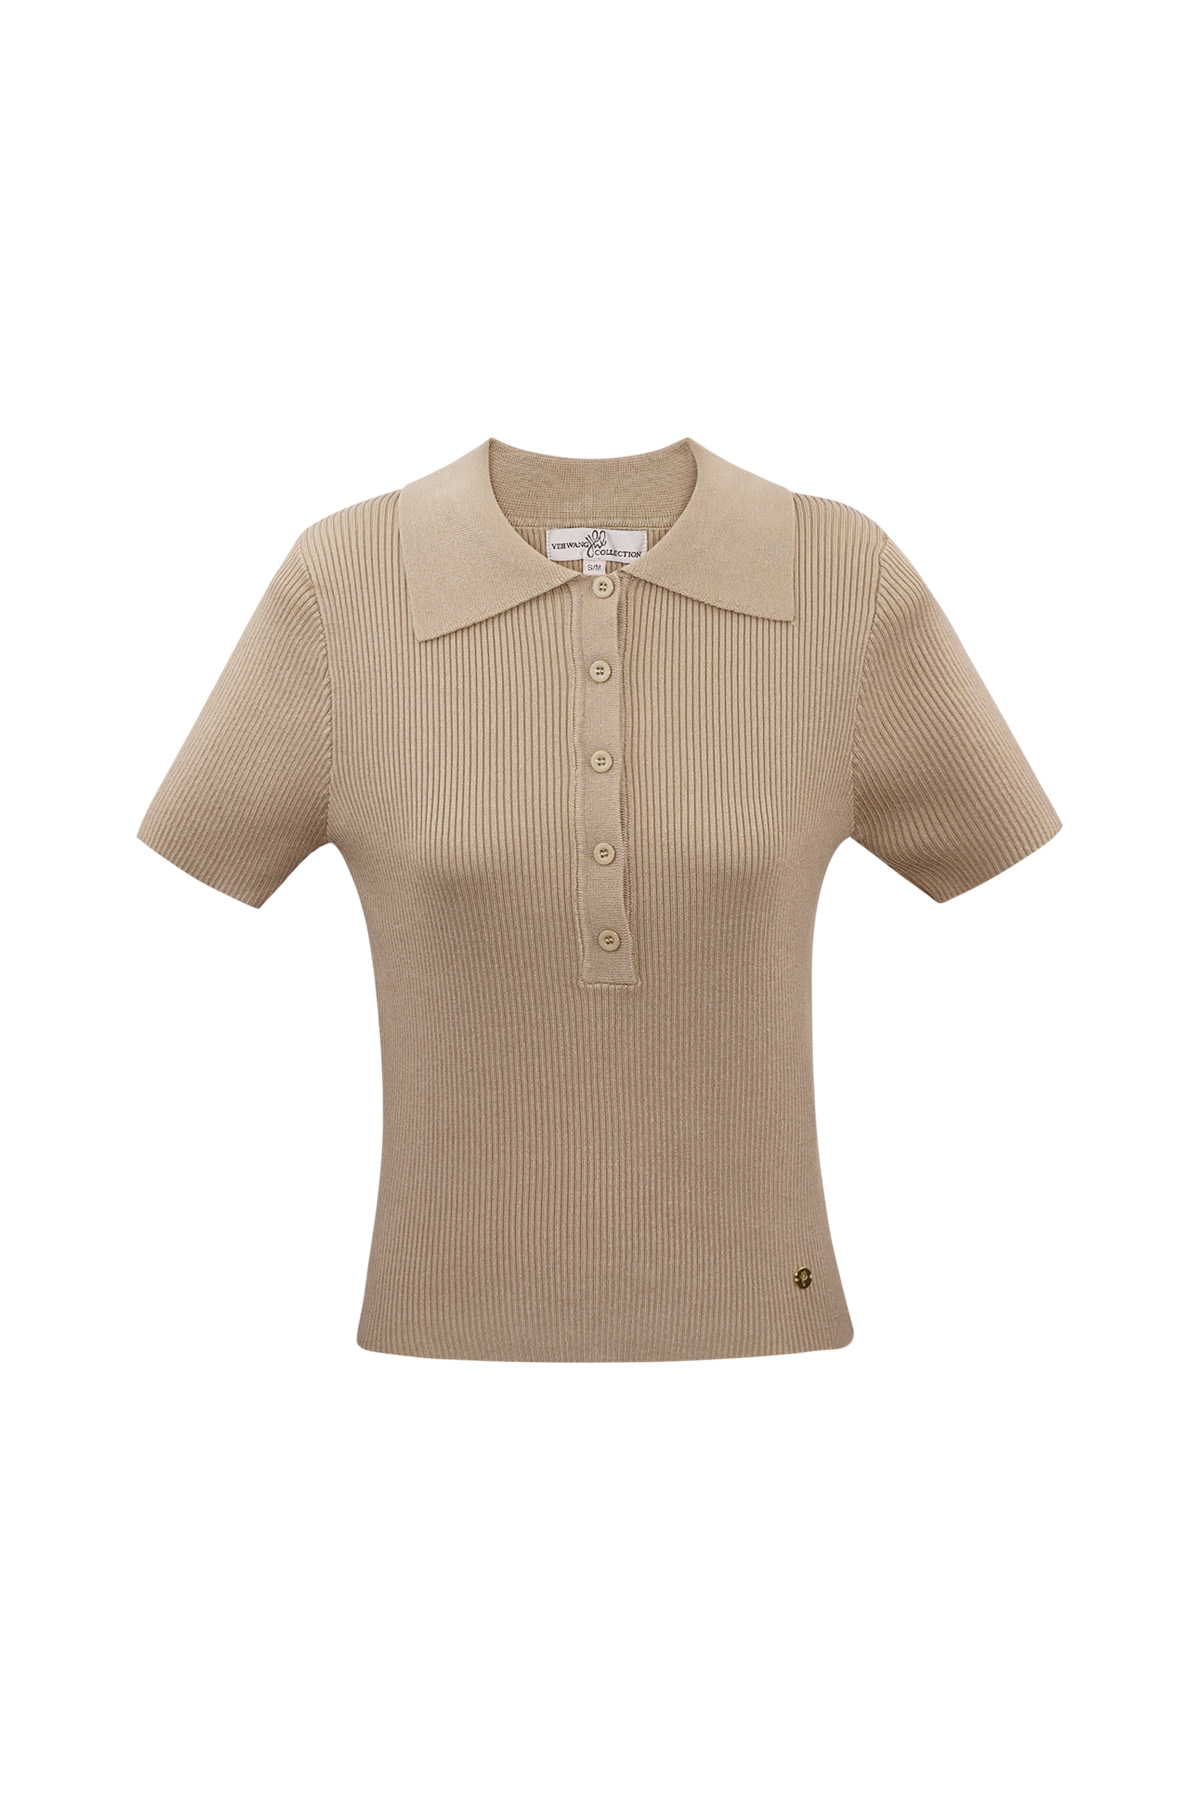 Basic-Poloshirt mit halber Knopfleiste, groß/extragroß – Beige 